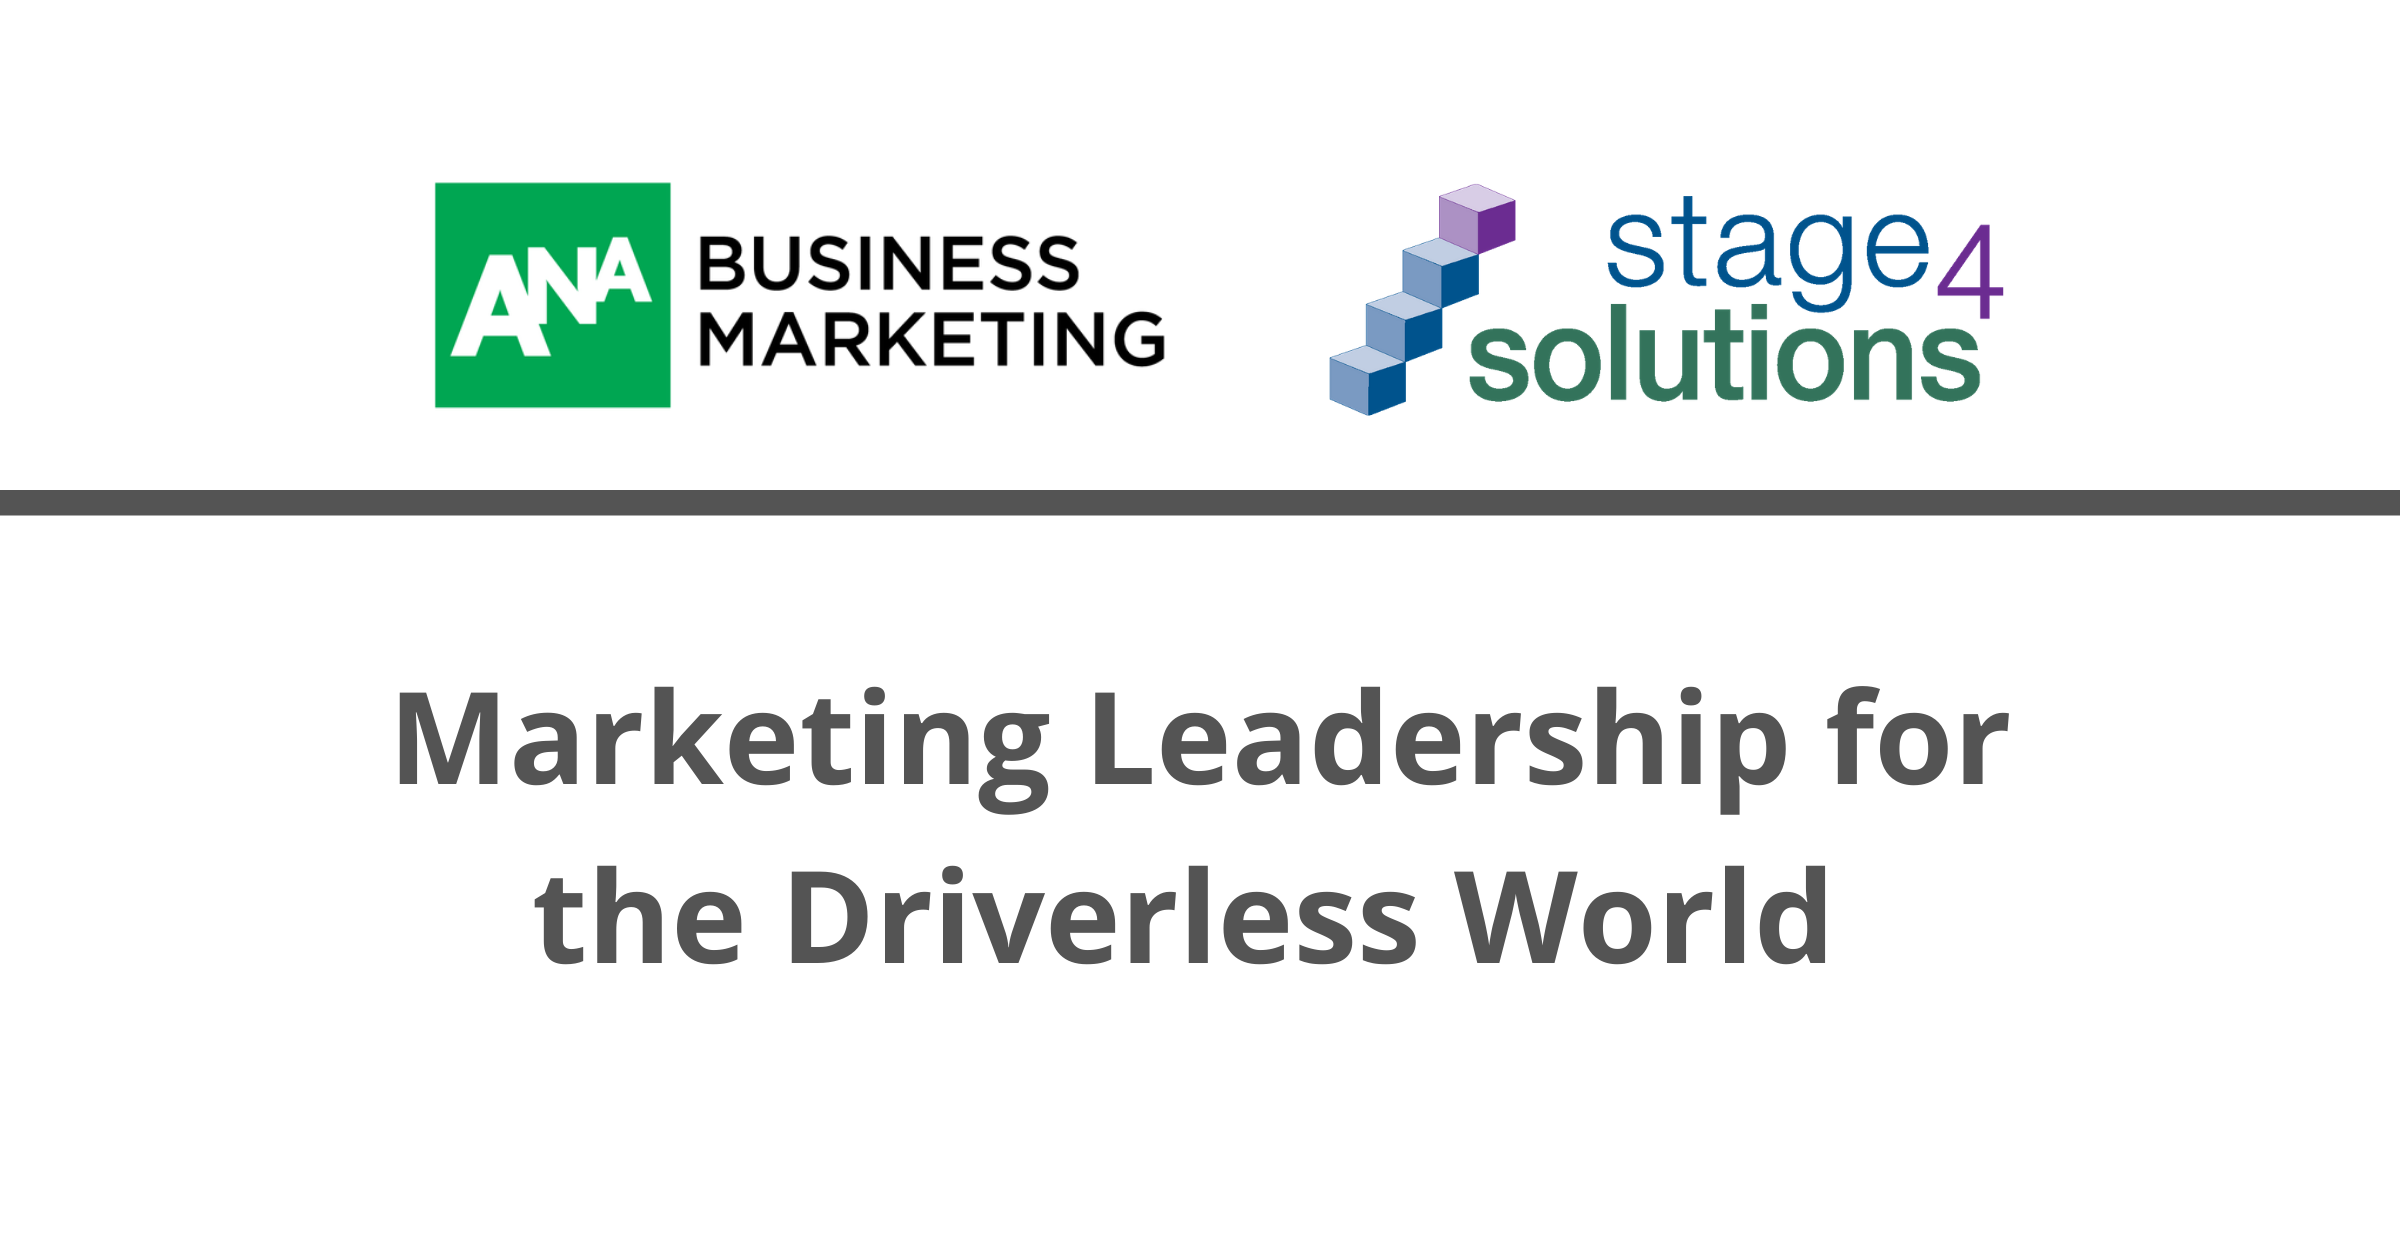 Marketing leadership